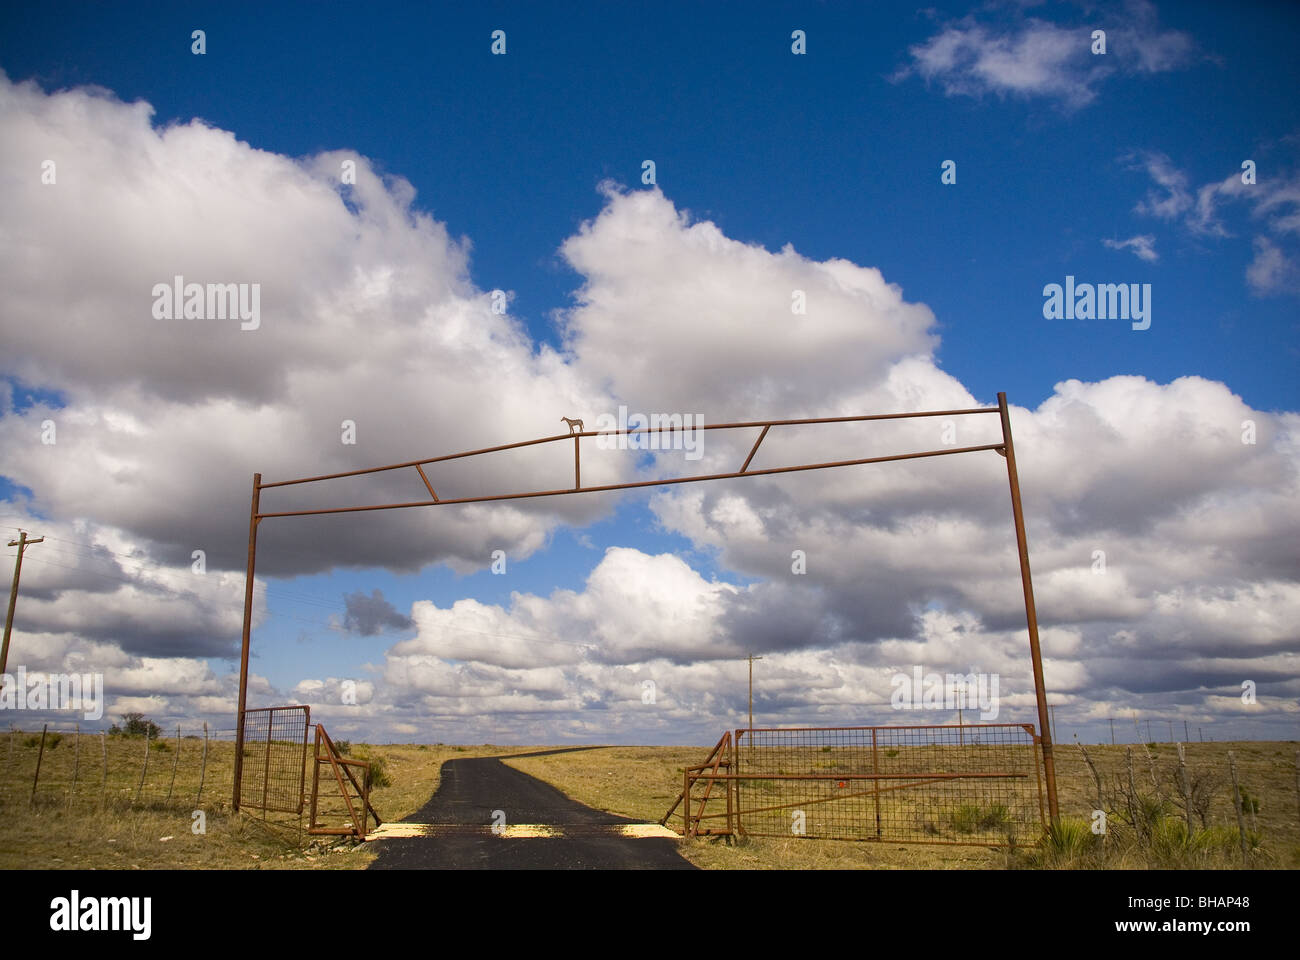 Texas Country Road e bovini in guardia contro una nuvola bianca riempito il cielo blu Foto Stock